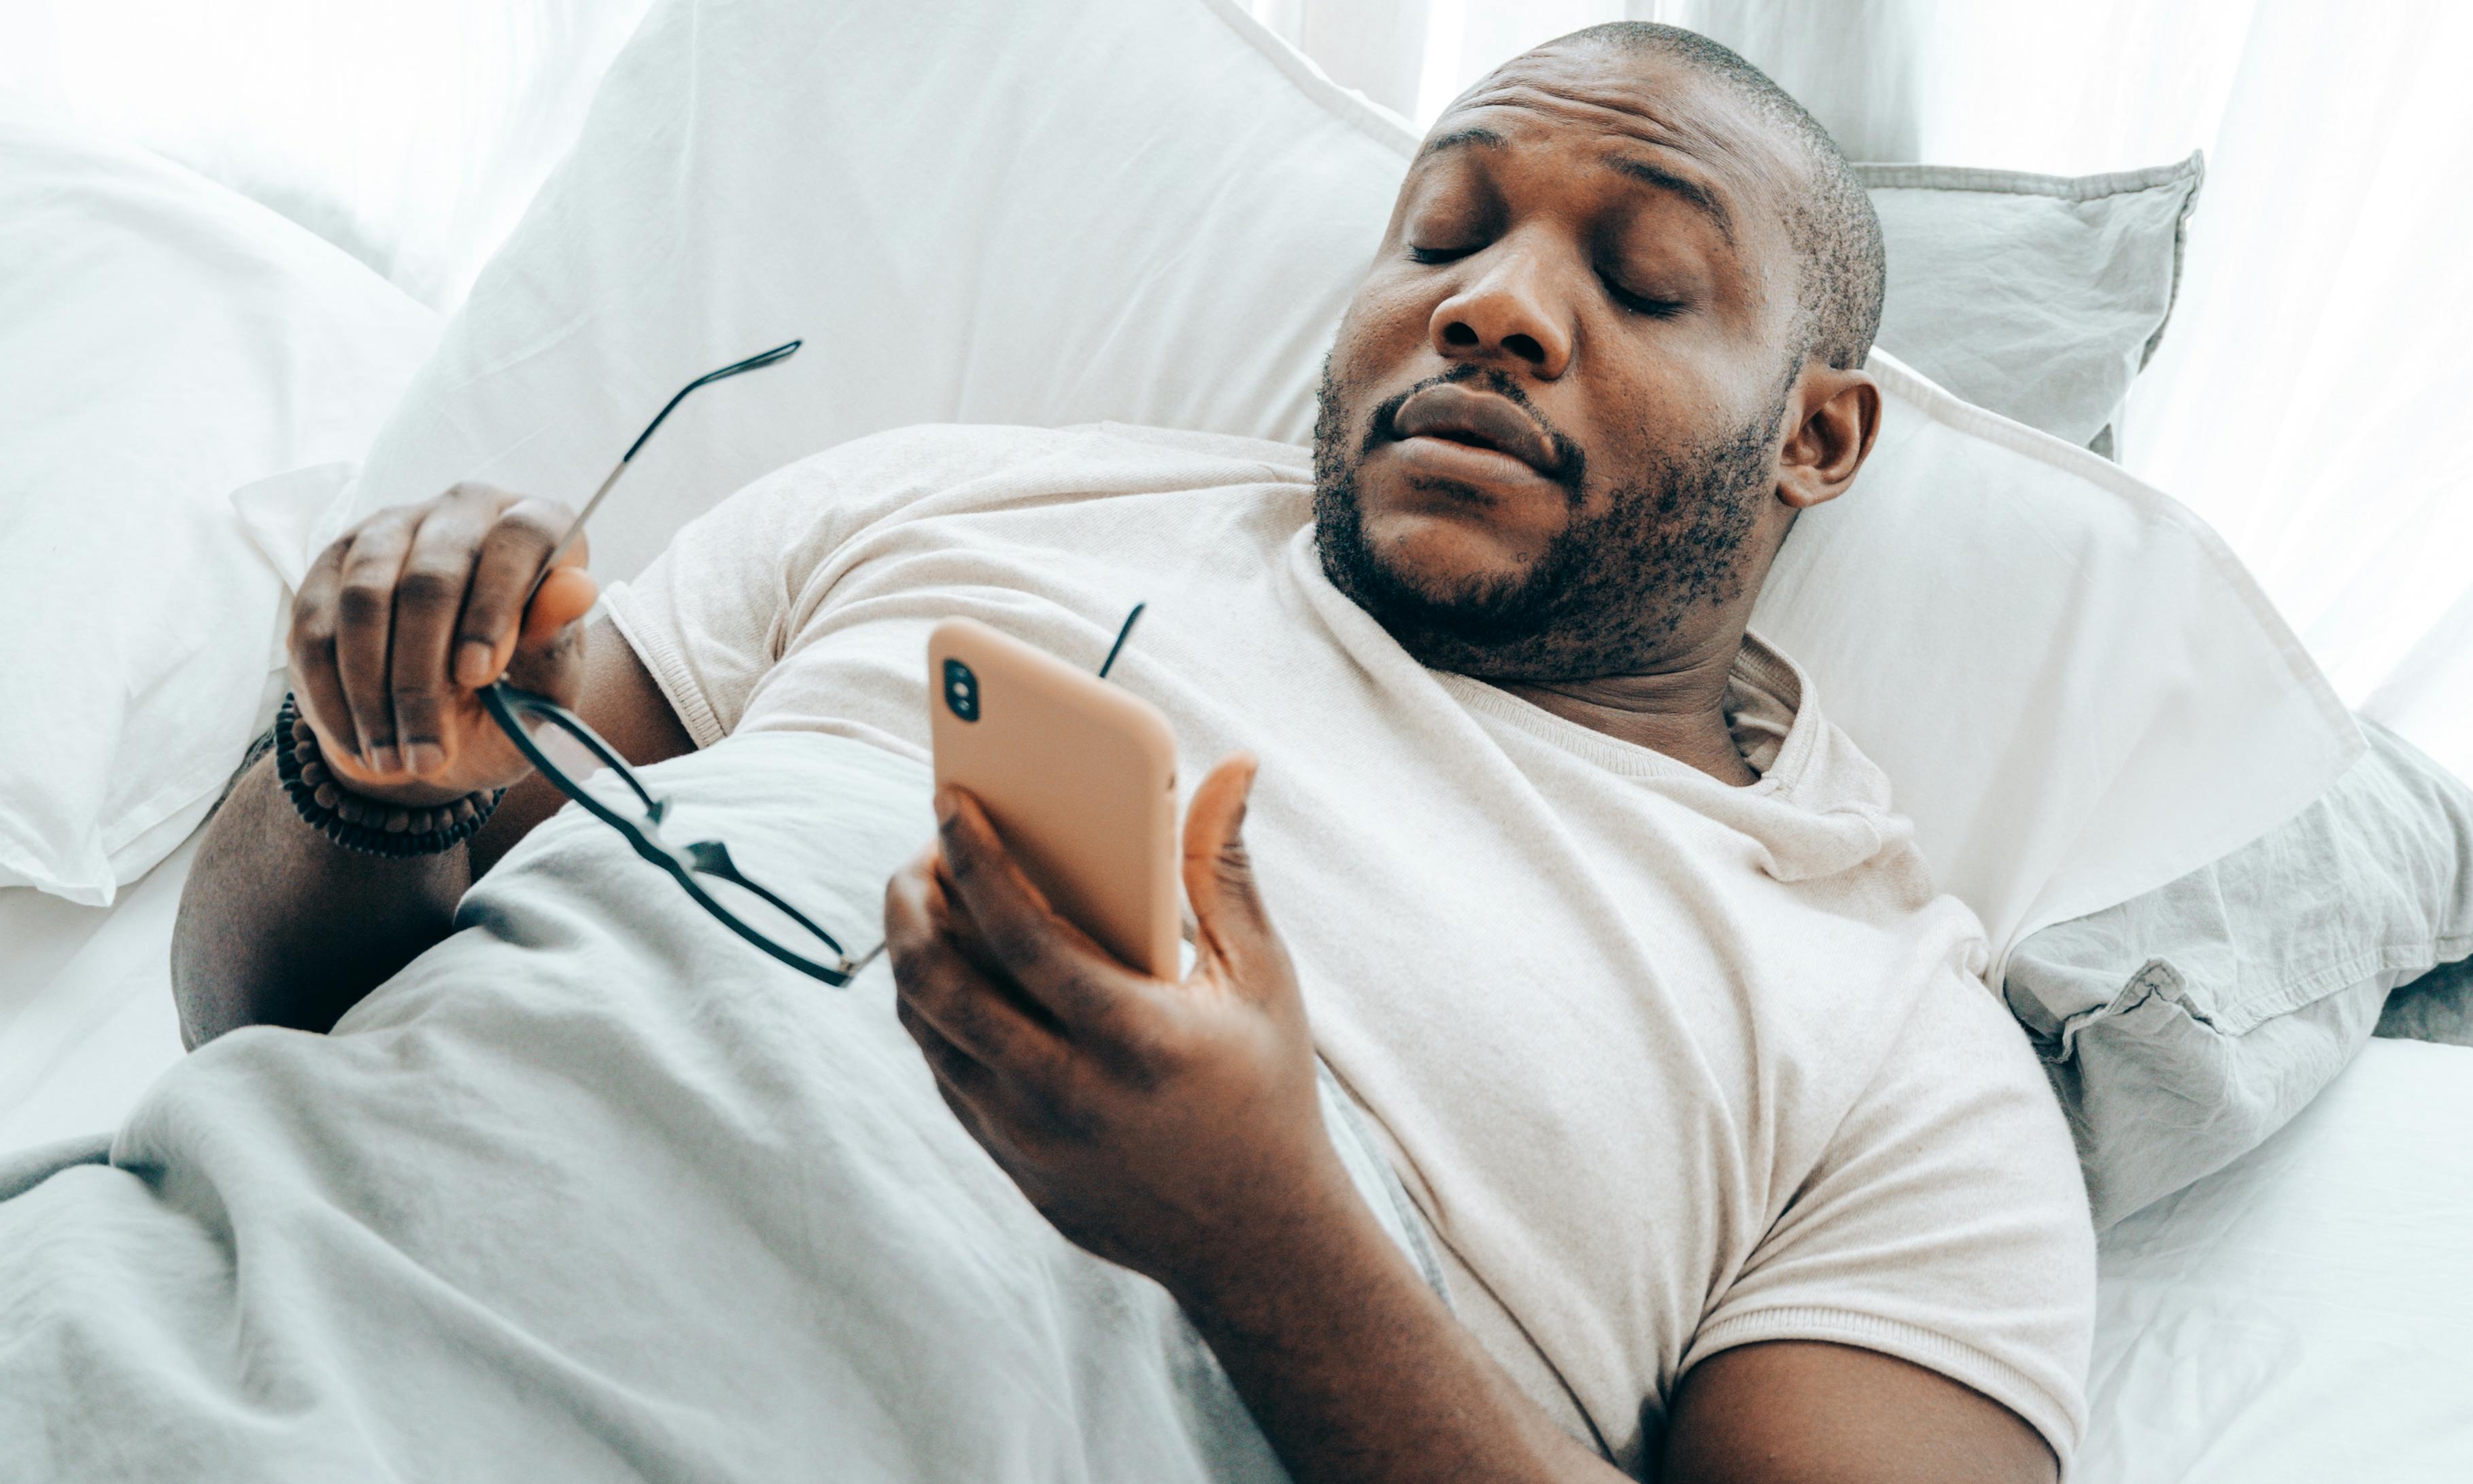 Un homme à l'air fatigué tenant un téléphone portable | Source : Pexels